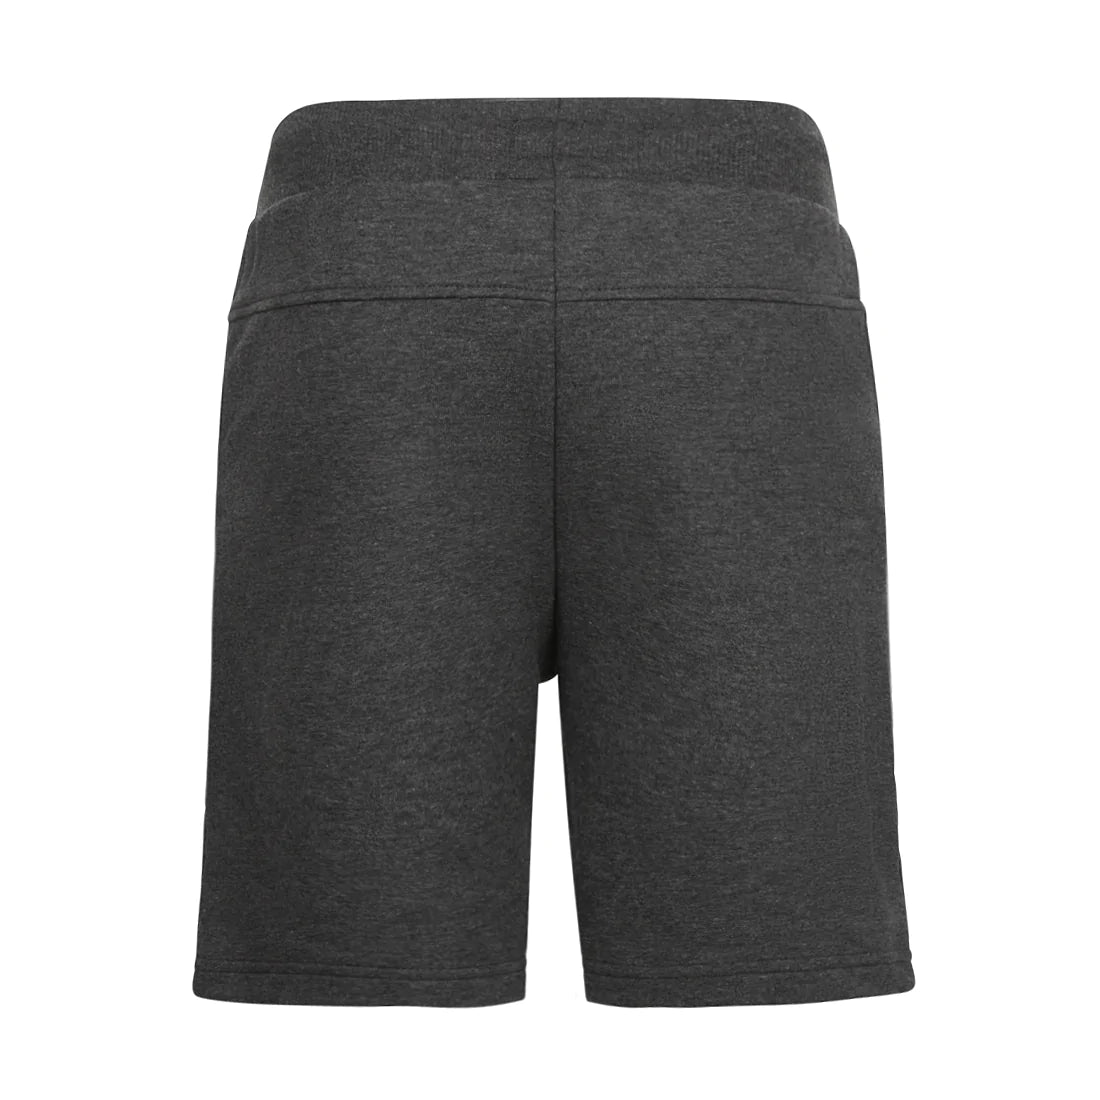 Jongens Jogging shorts van No Way Monday in de kleur Grey in maat 164.